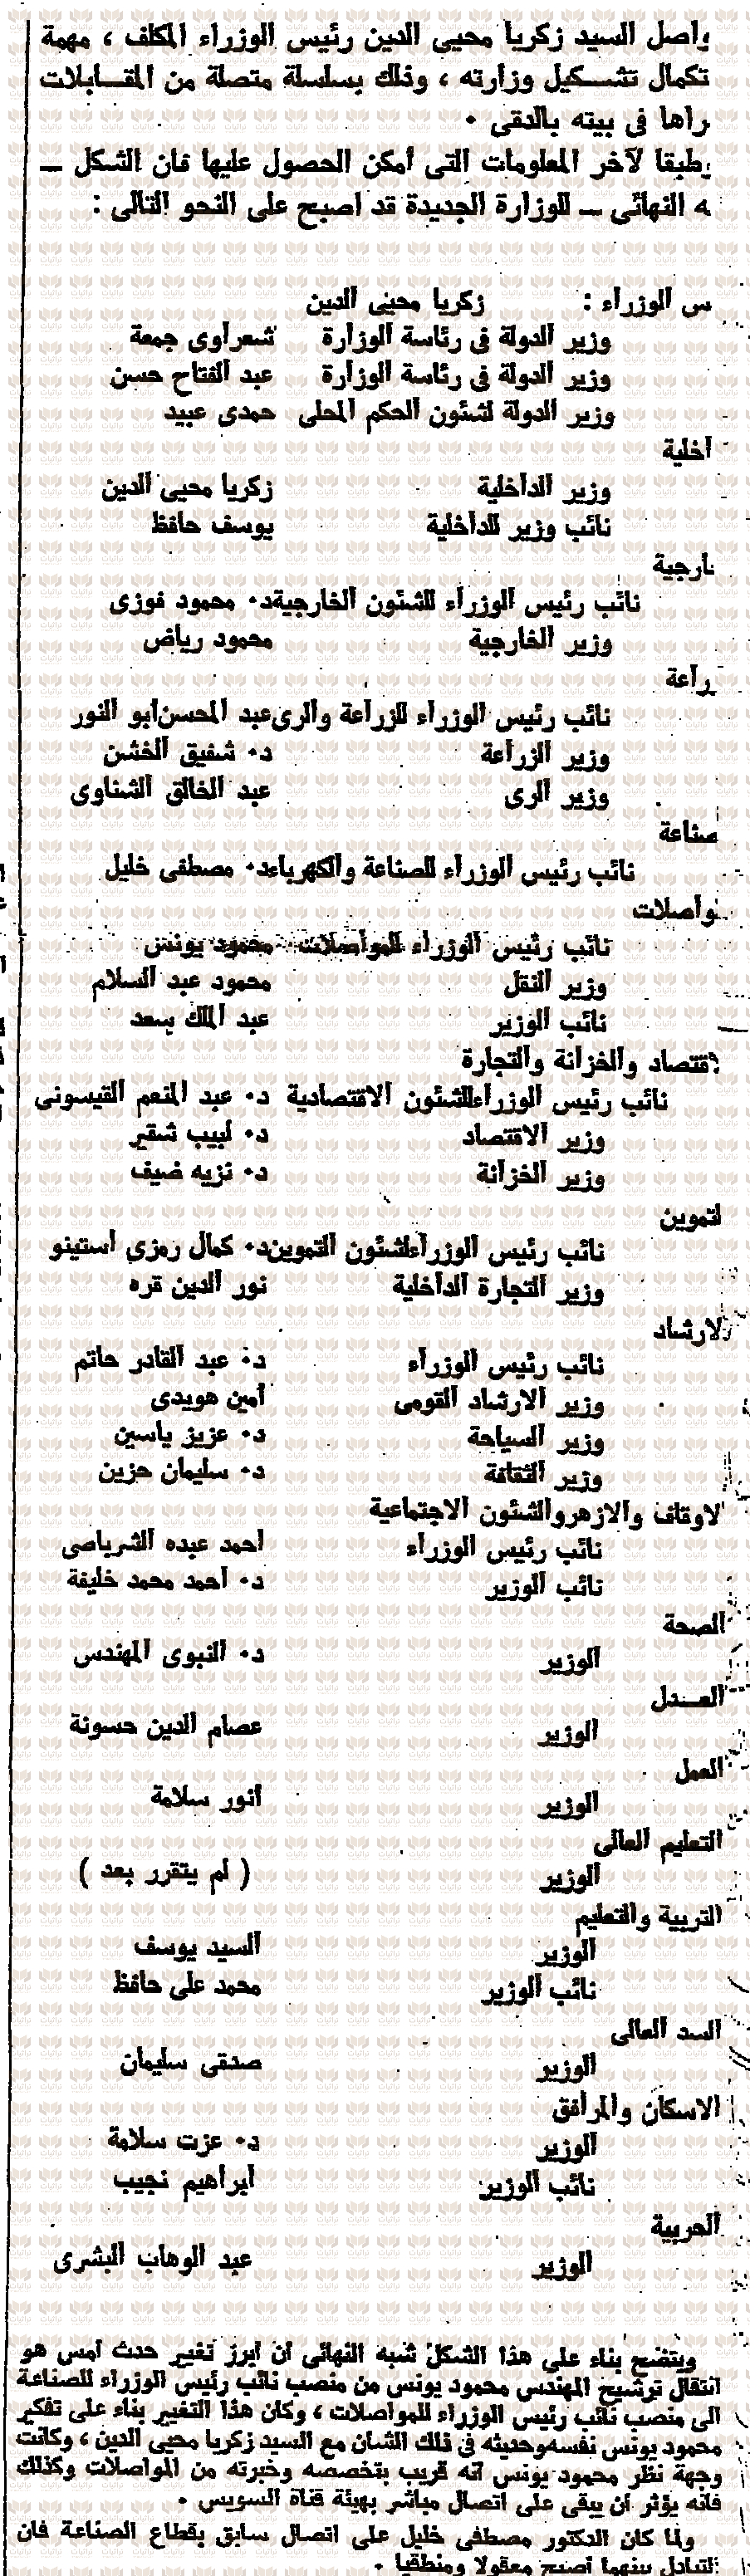 اسم الدكتور شفيق علي الخشن في تشكيل حكومة زكريا محي الدين 1 أكتوبر 1965 